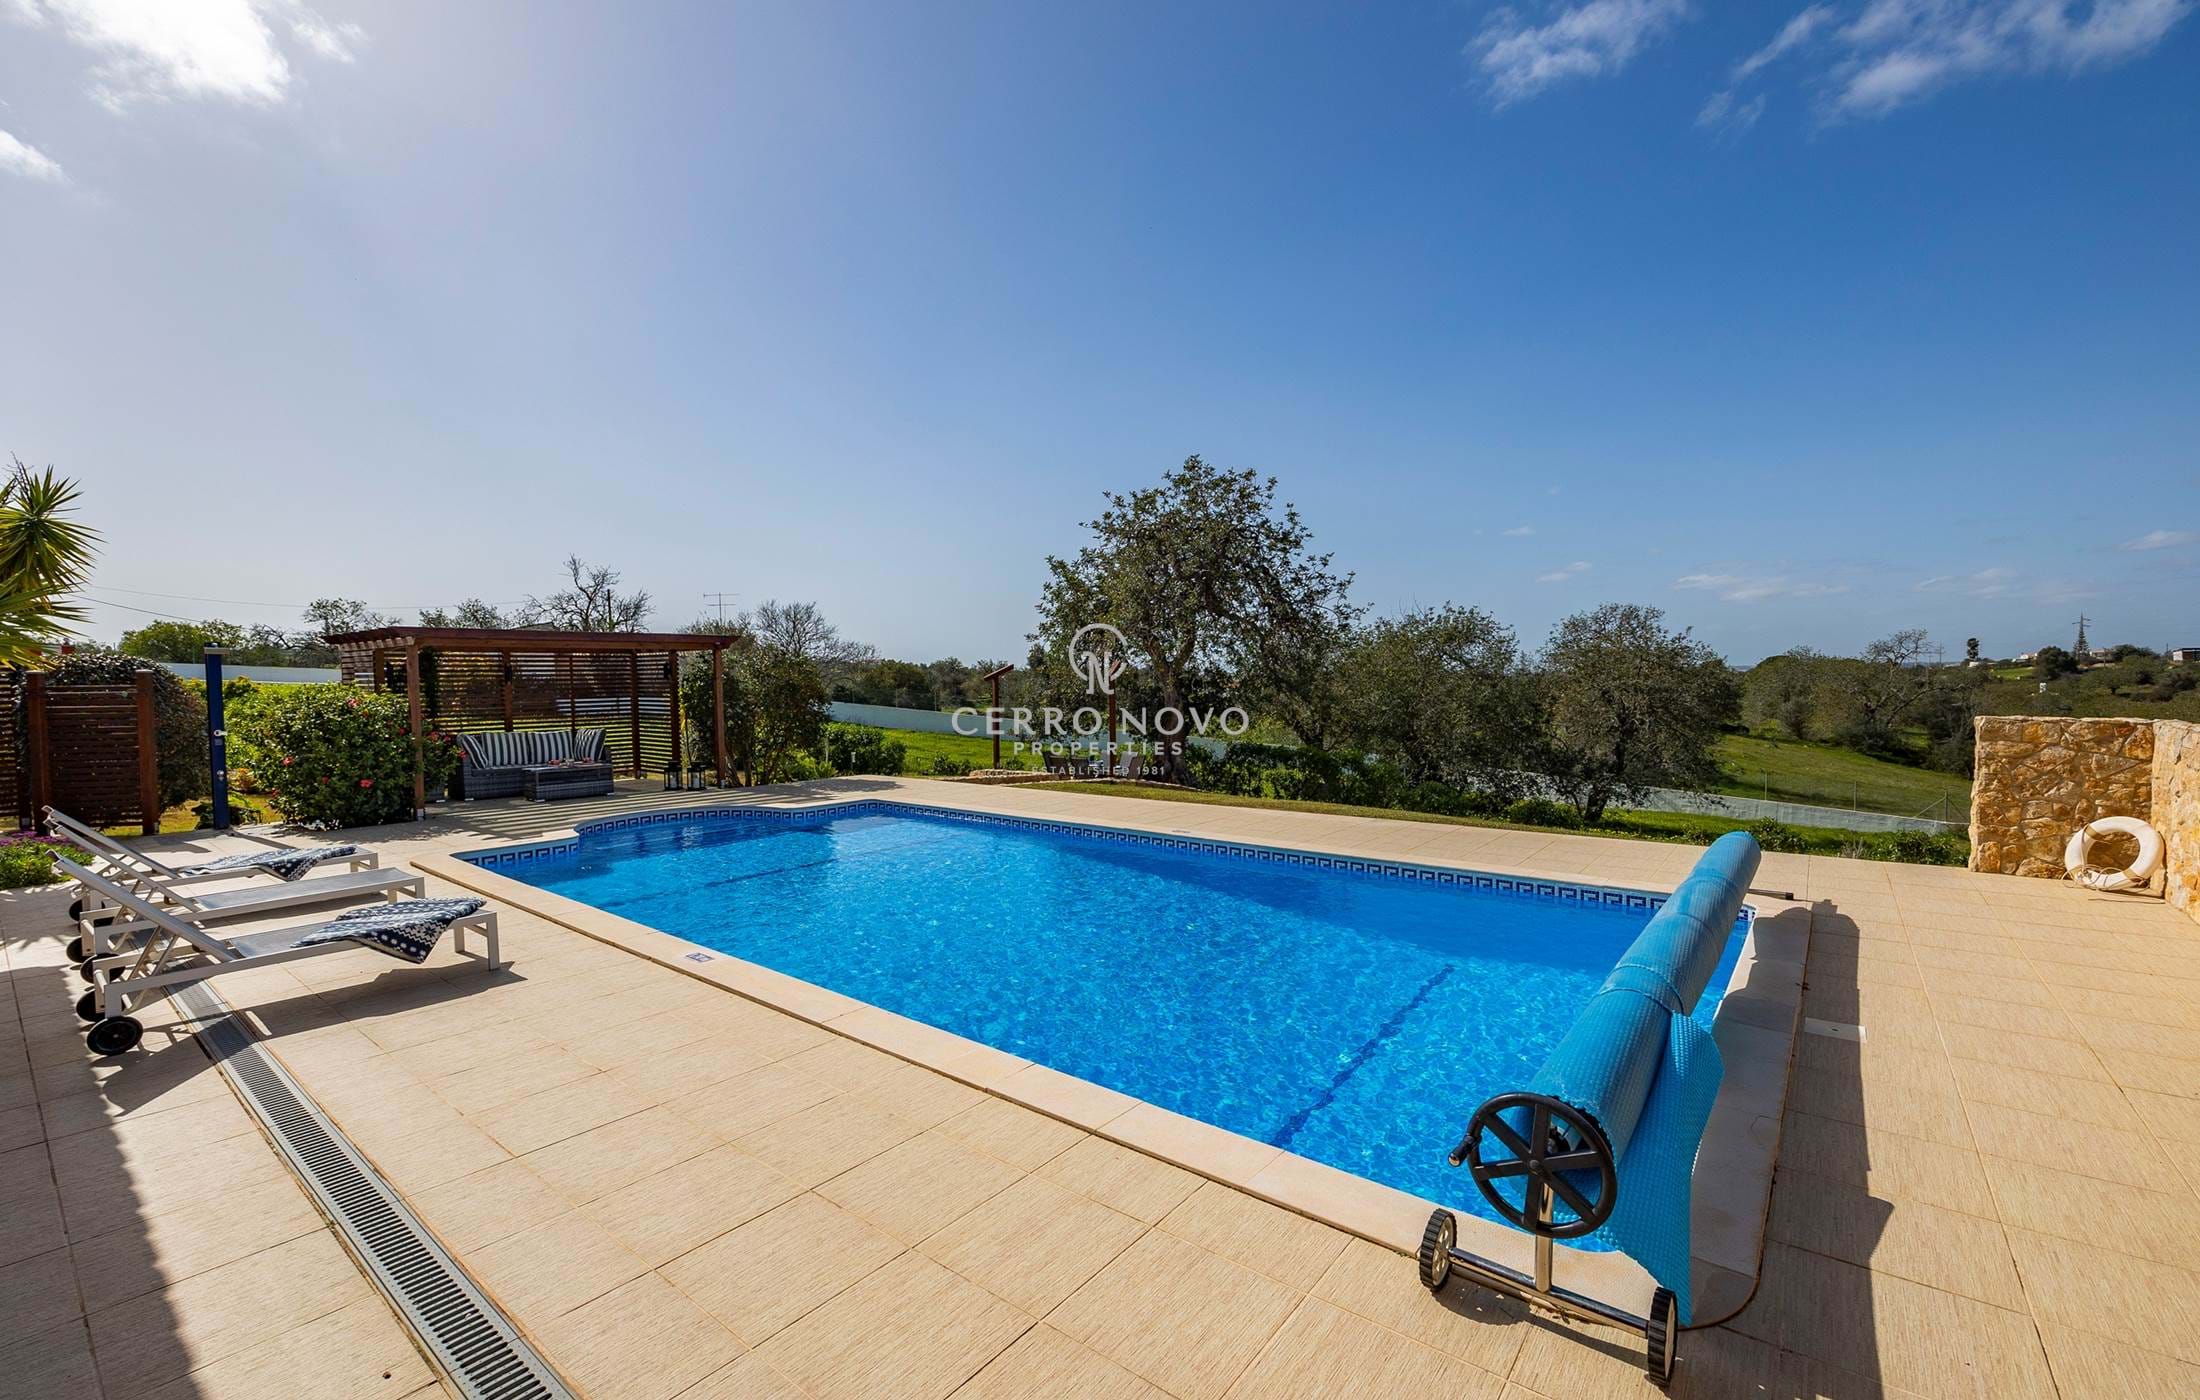 Fantastique villa  entièrement rénovée avec piscine et jardins.